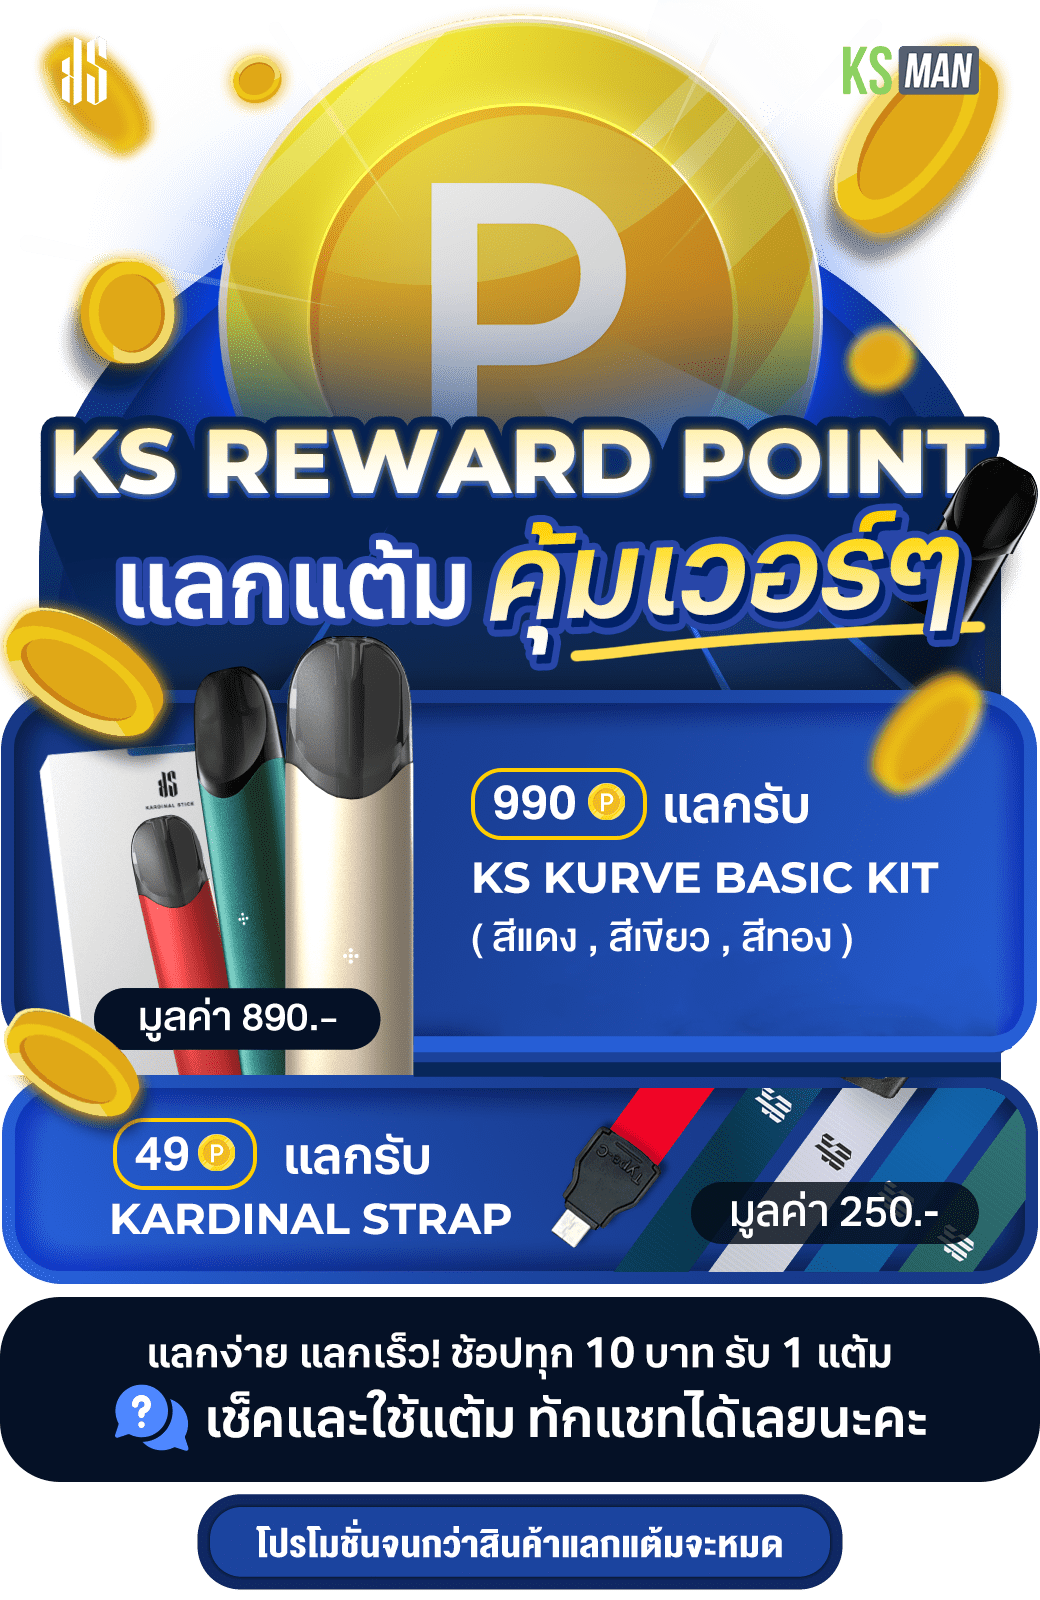 ks reward point ks kurve and ks pod max